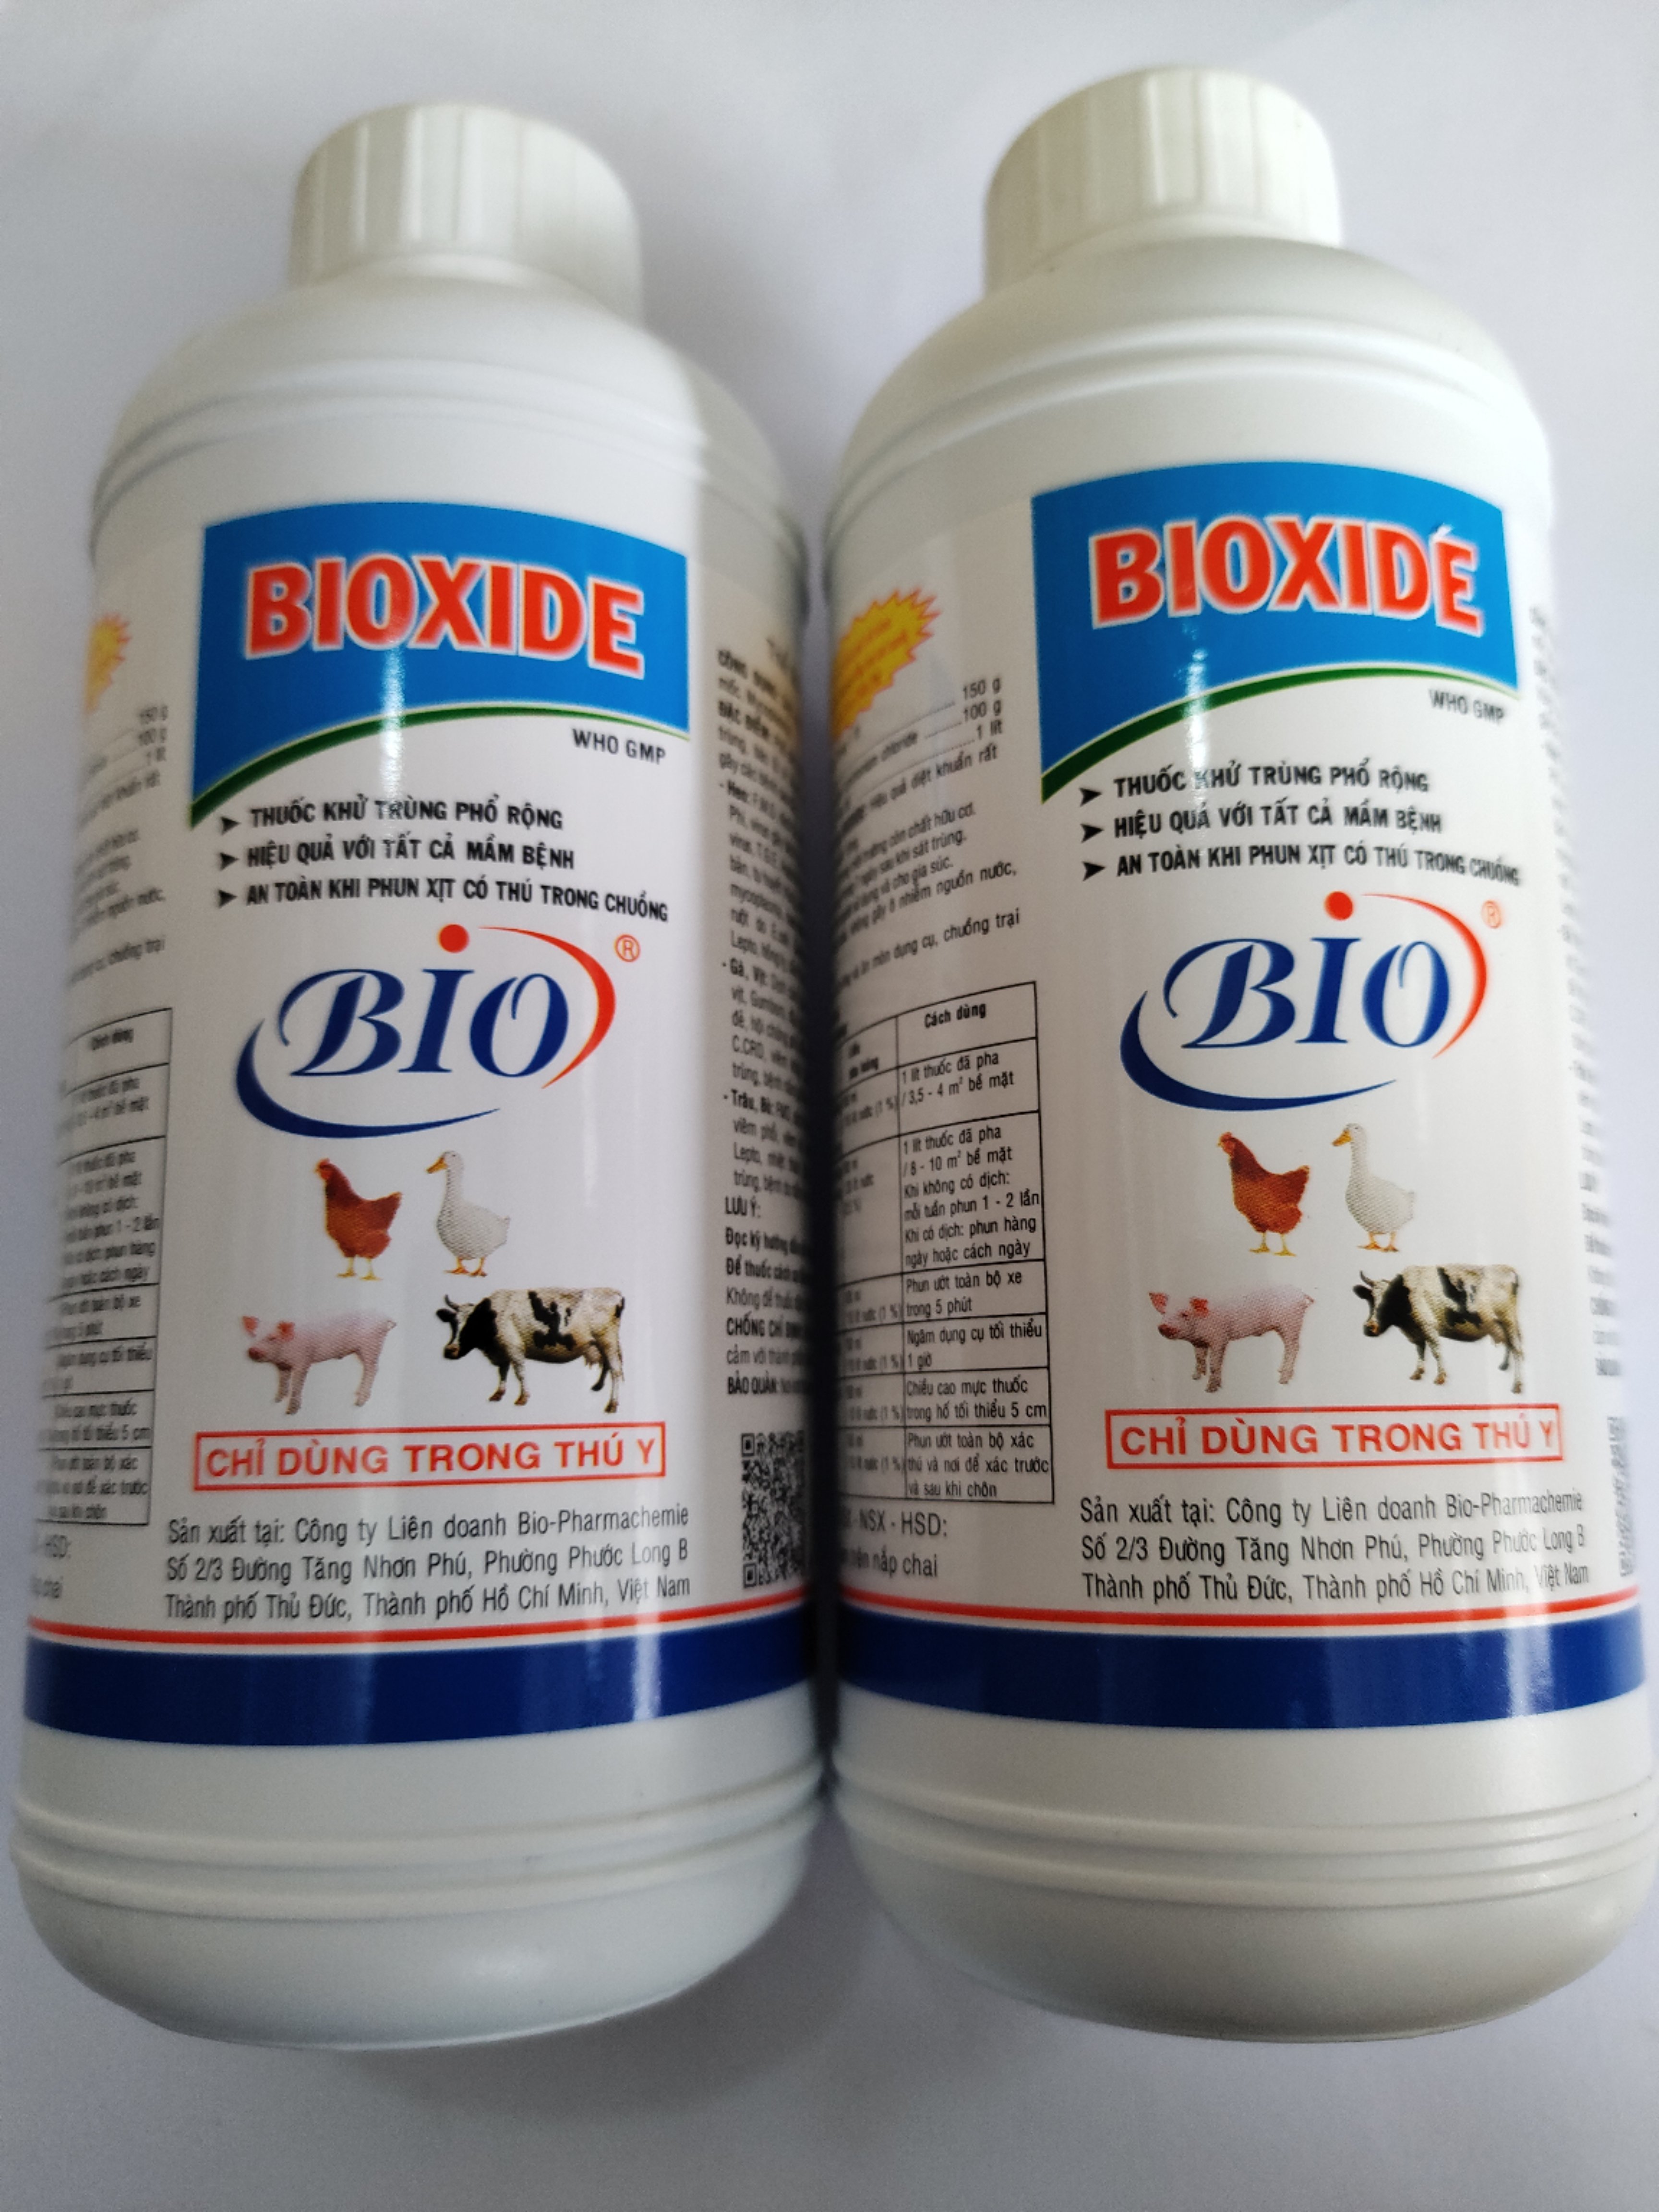 BIOXIDE 500ml Thuốc khử trùng phổ rộng hiệu quả với tất cả mầm bệnh, an toàn khi dùng với thú trong chuồng